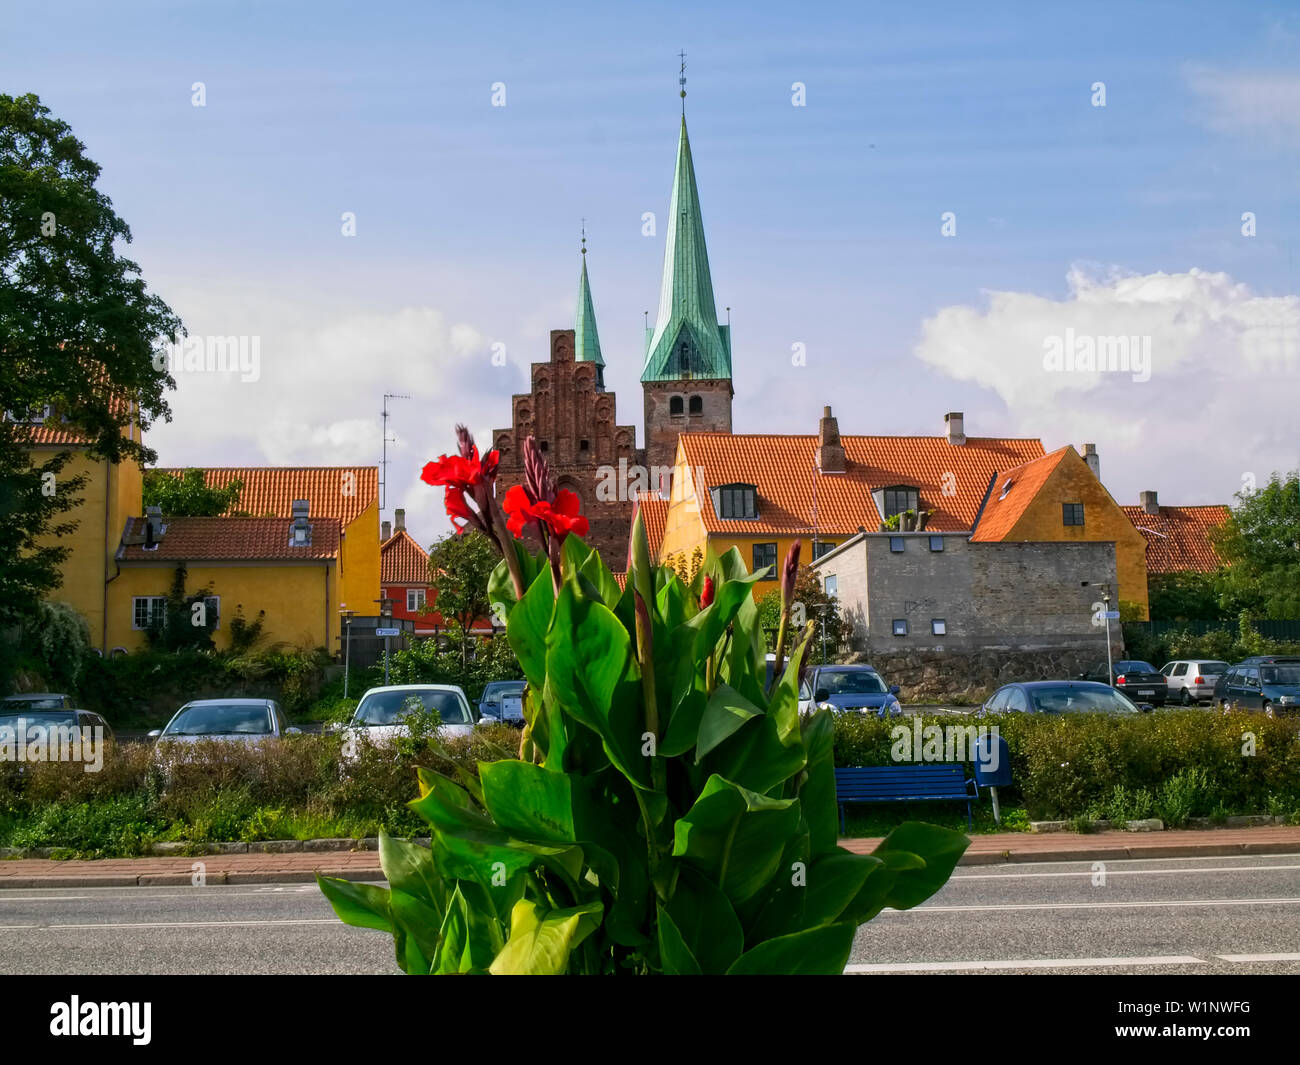 Cityscape of Helsingoer, Sjaelland, Denmark, seen from Havnegade. Stock Photo